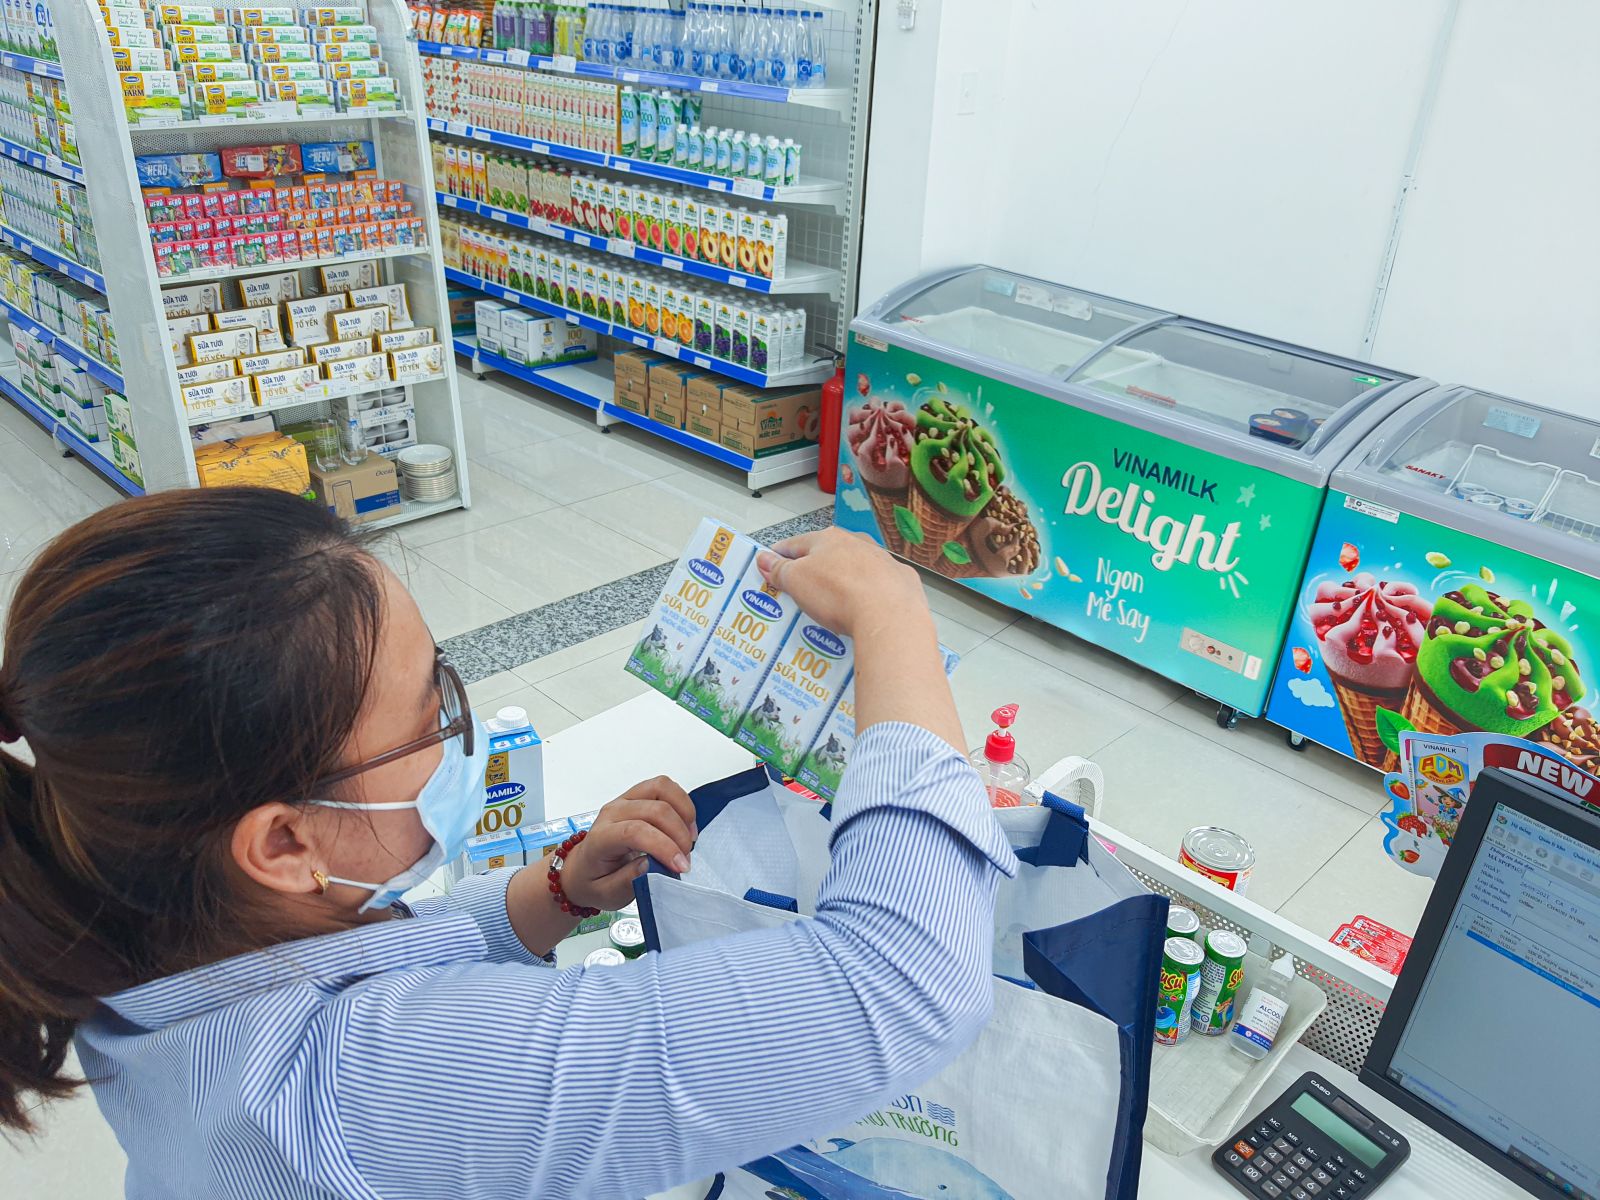 Nhân viên của cửa hàng Giấc mơ sữa Việt cẩn thận kiểm tra các sản phẩm trước khi giao đến tận nhà cho người tiêu dùng.